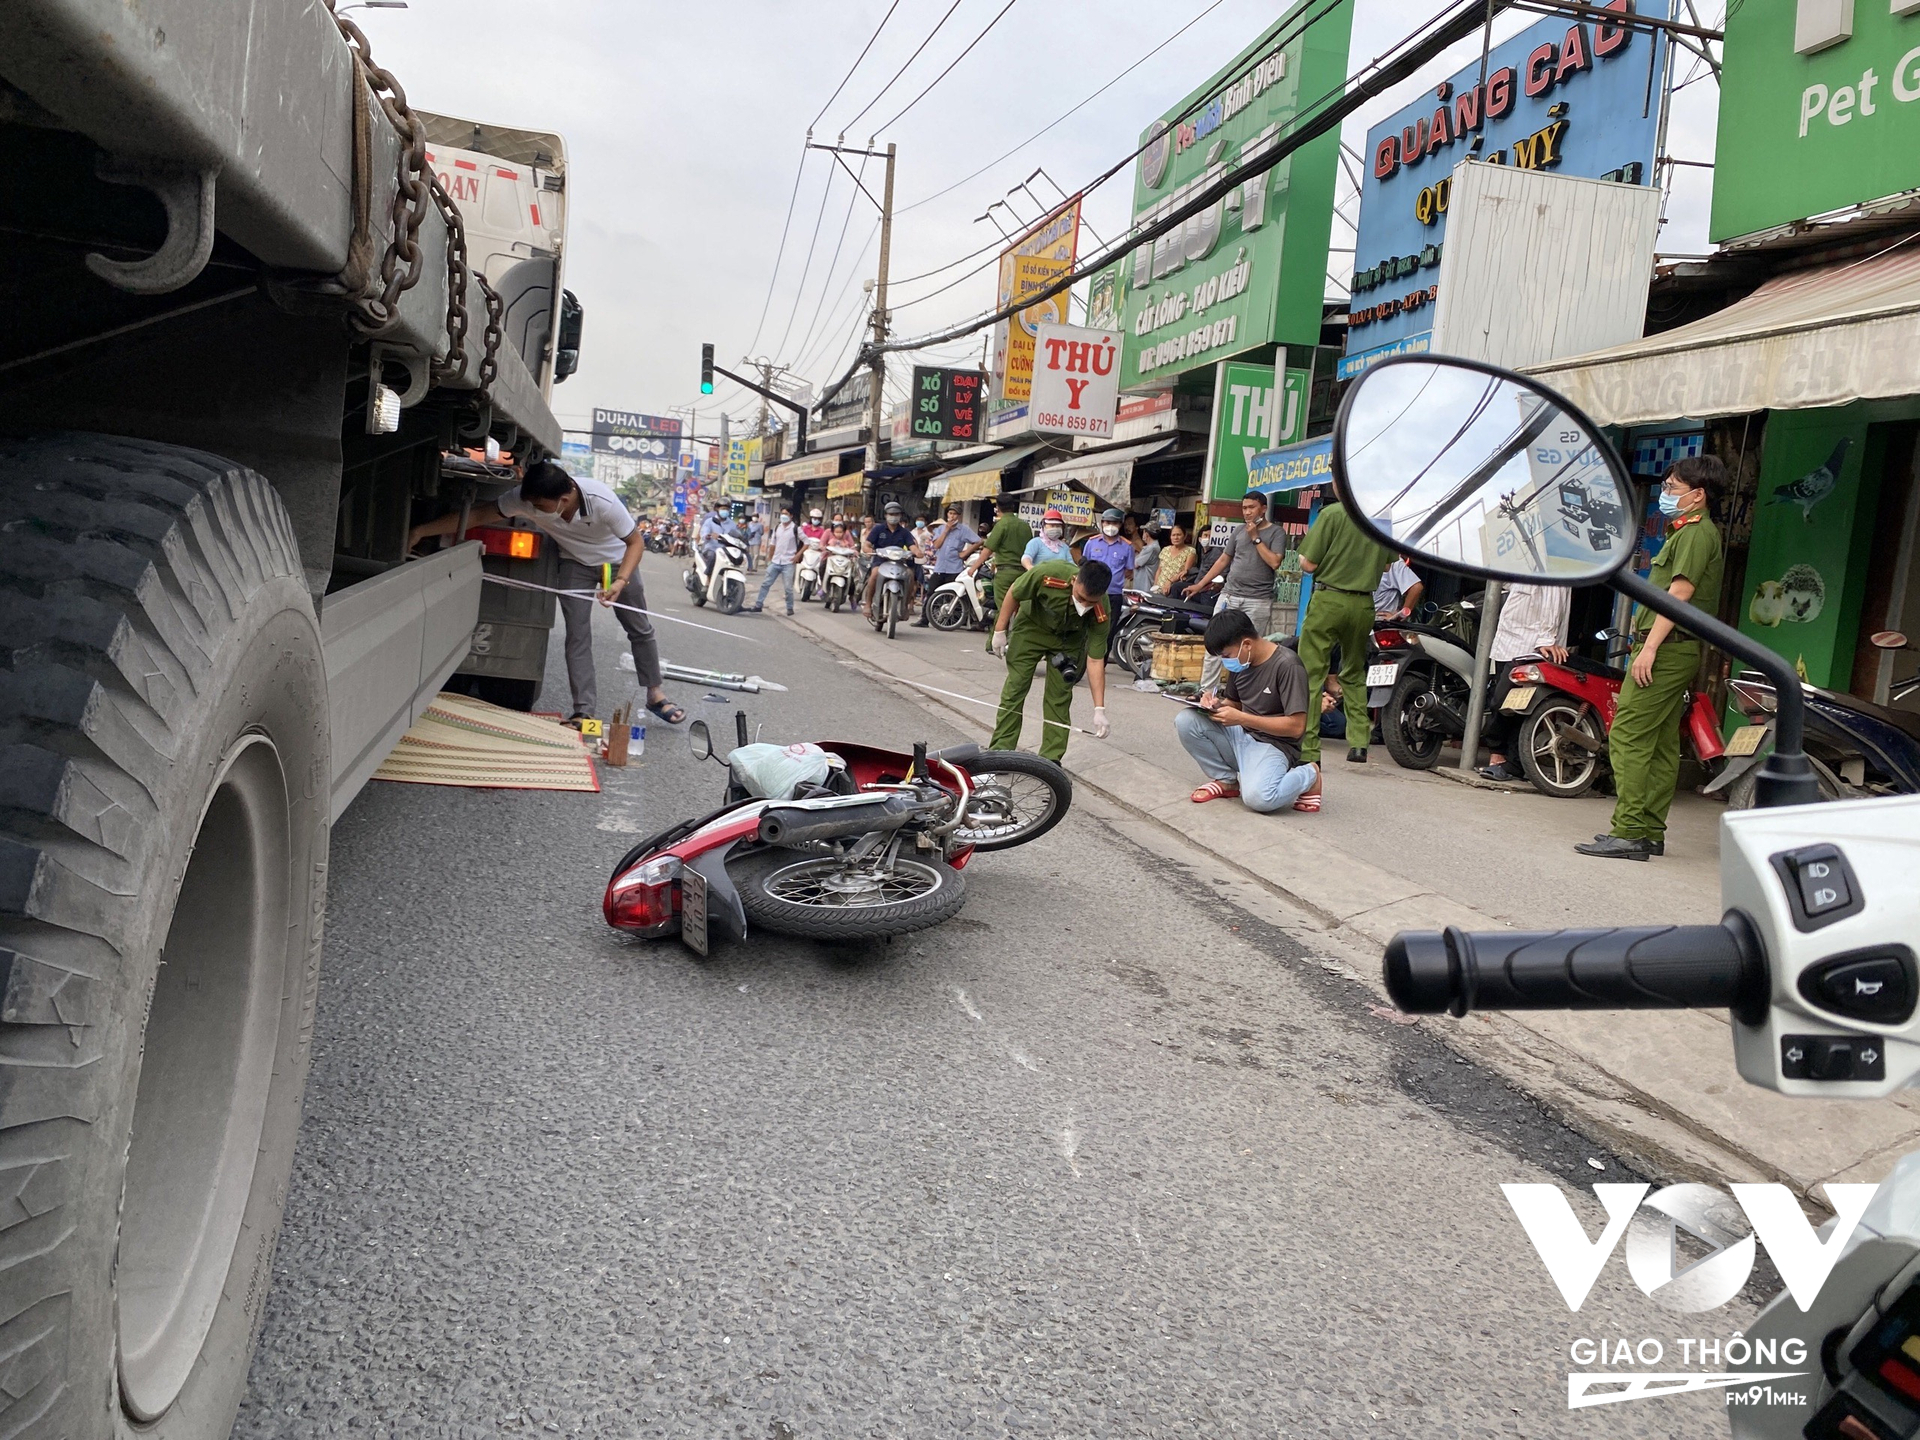 Sau va chạm với 1 xe máy chạy cùng chiều, người phụ nữ ngã xuống đường và bị xe đầu kéo cán tử vong.